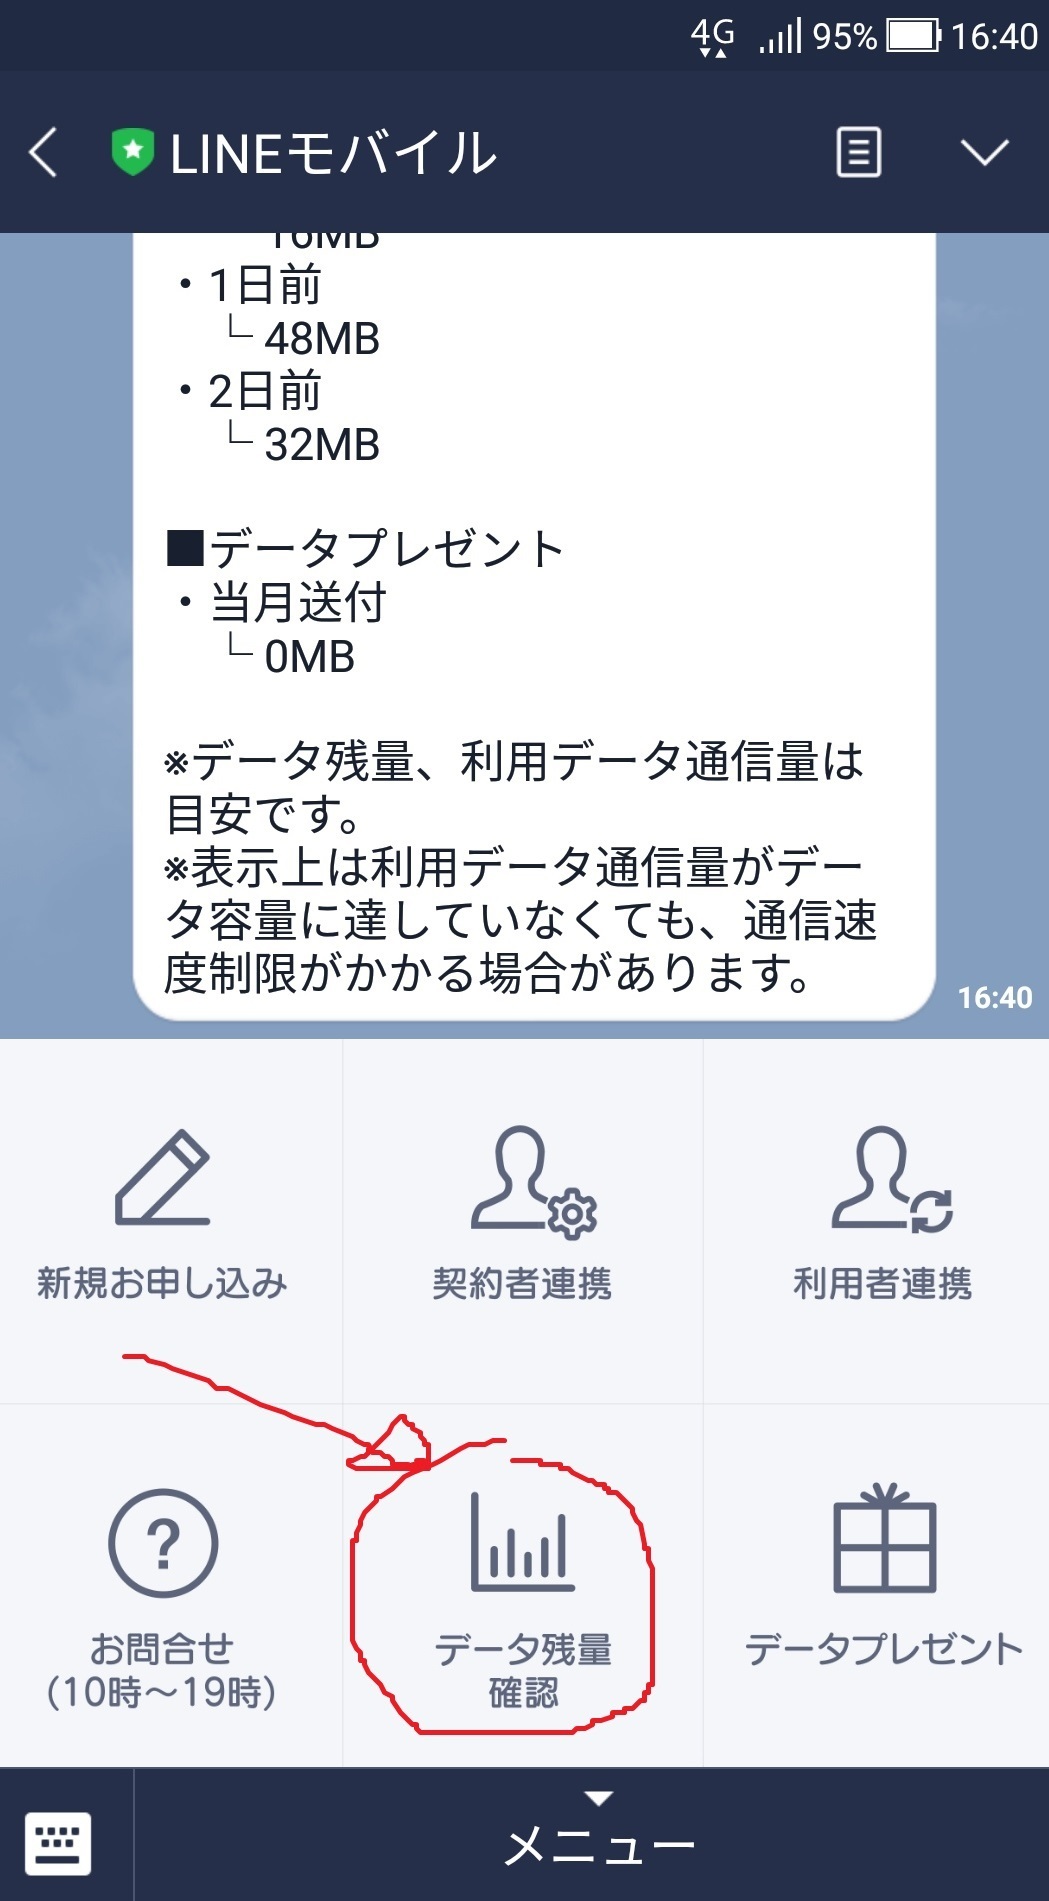 data_sumaho_net_nokori_LINEmobile.jpg